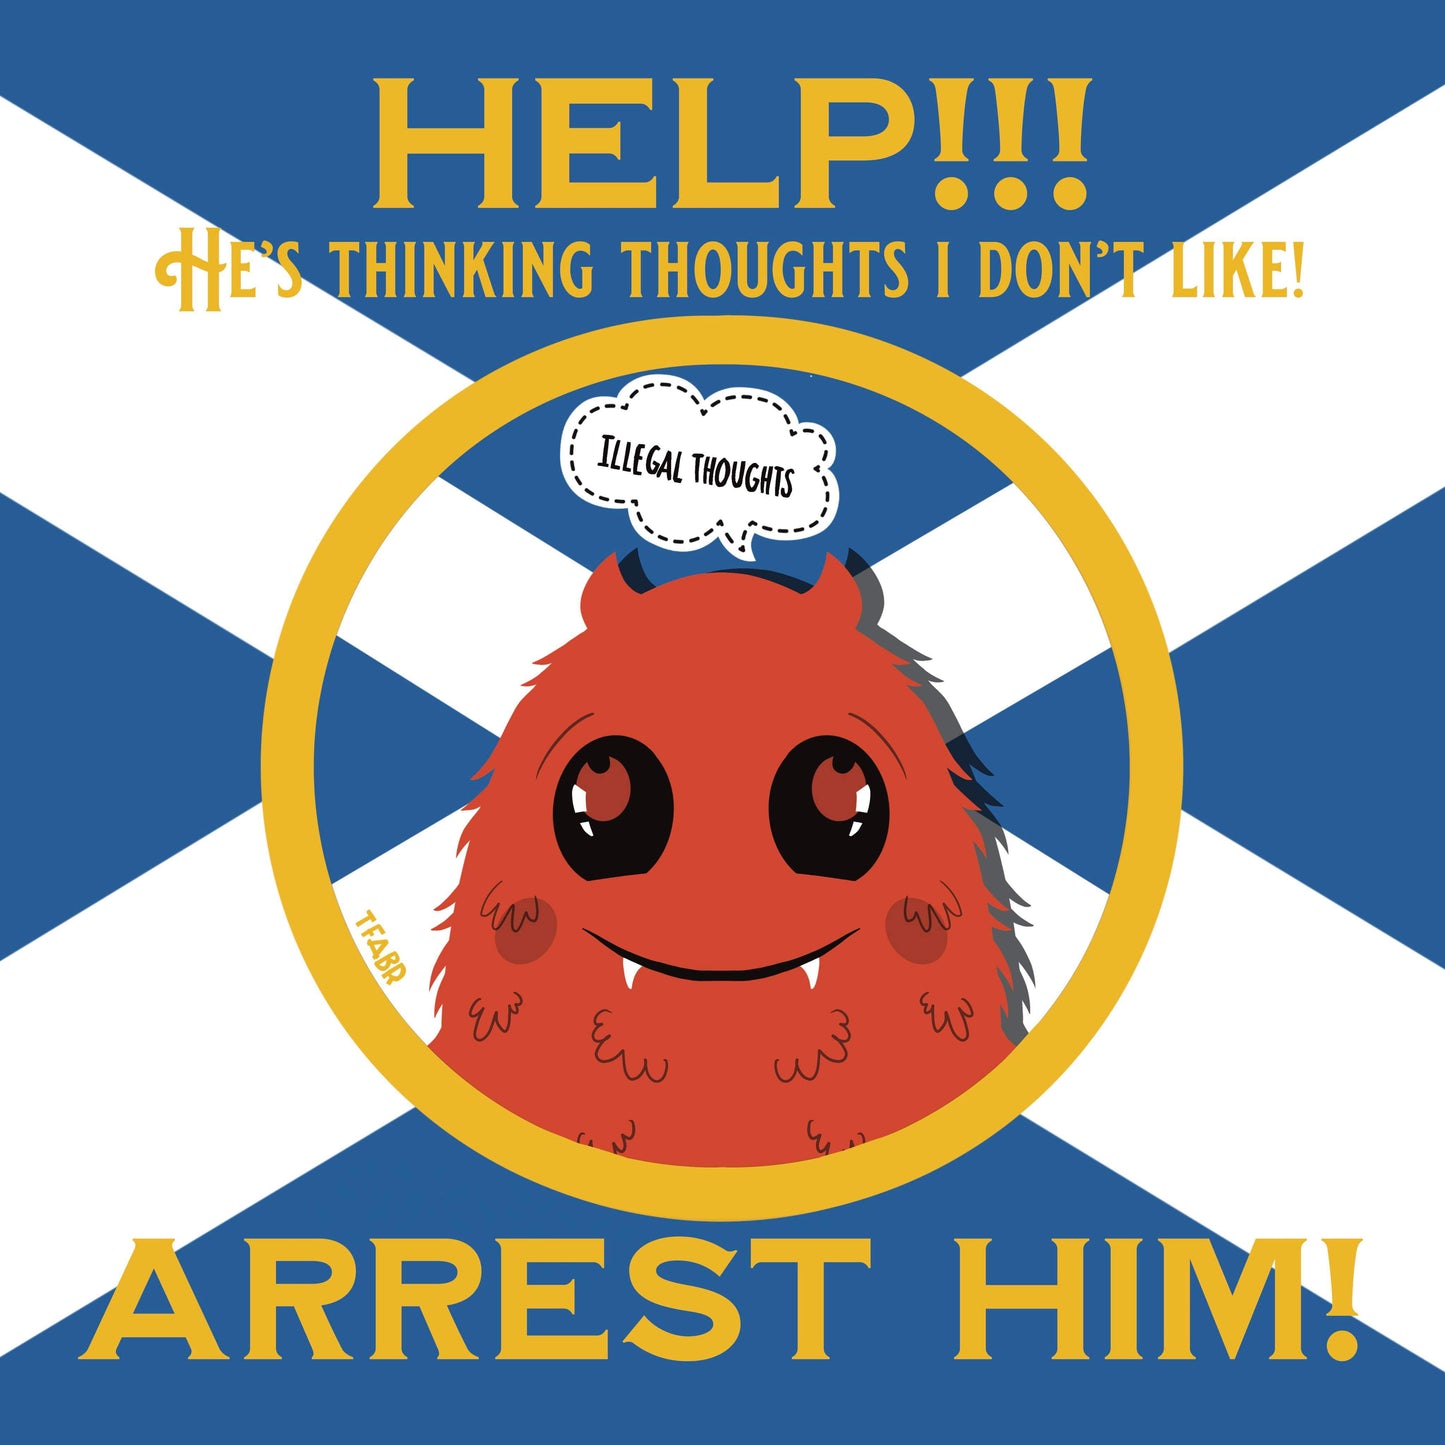 Arrest Scotland Stickers!